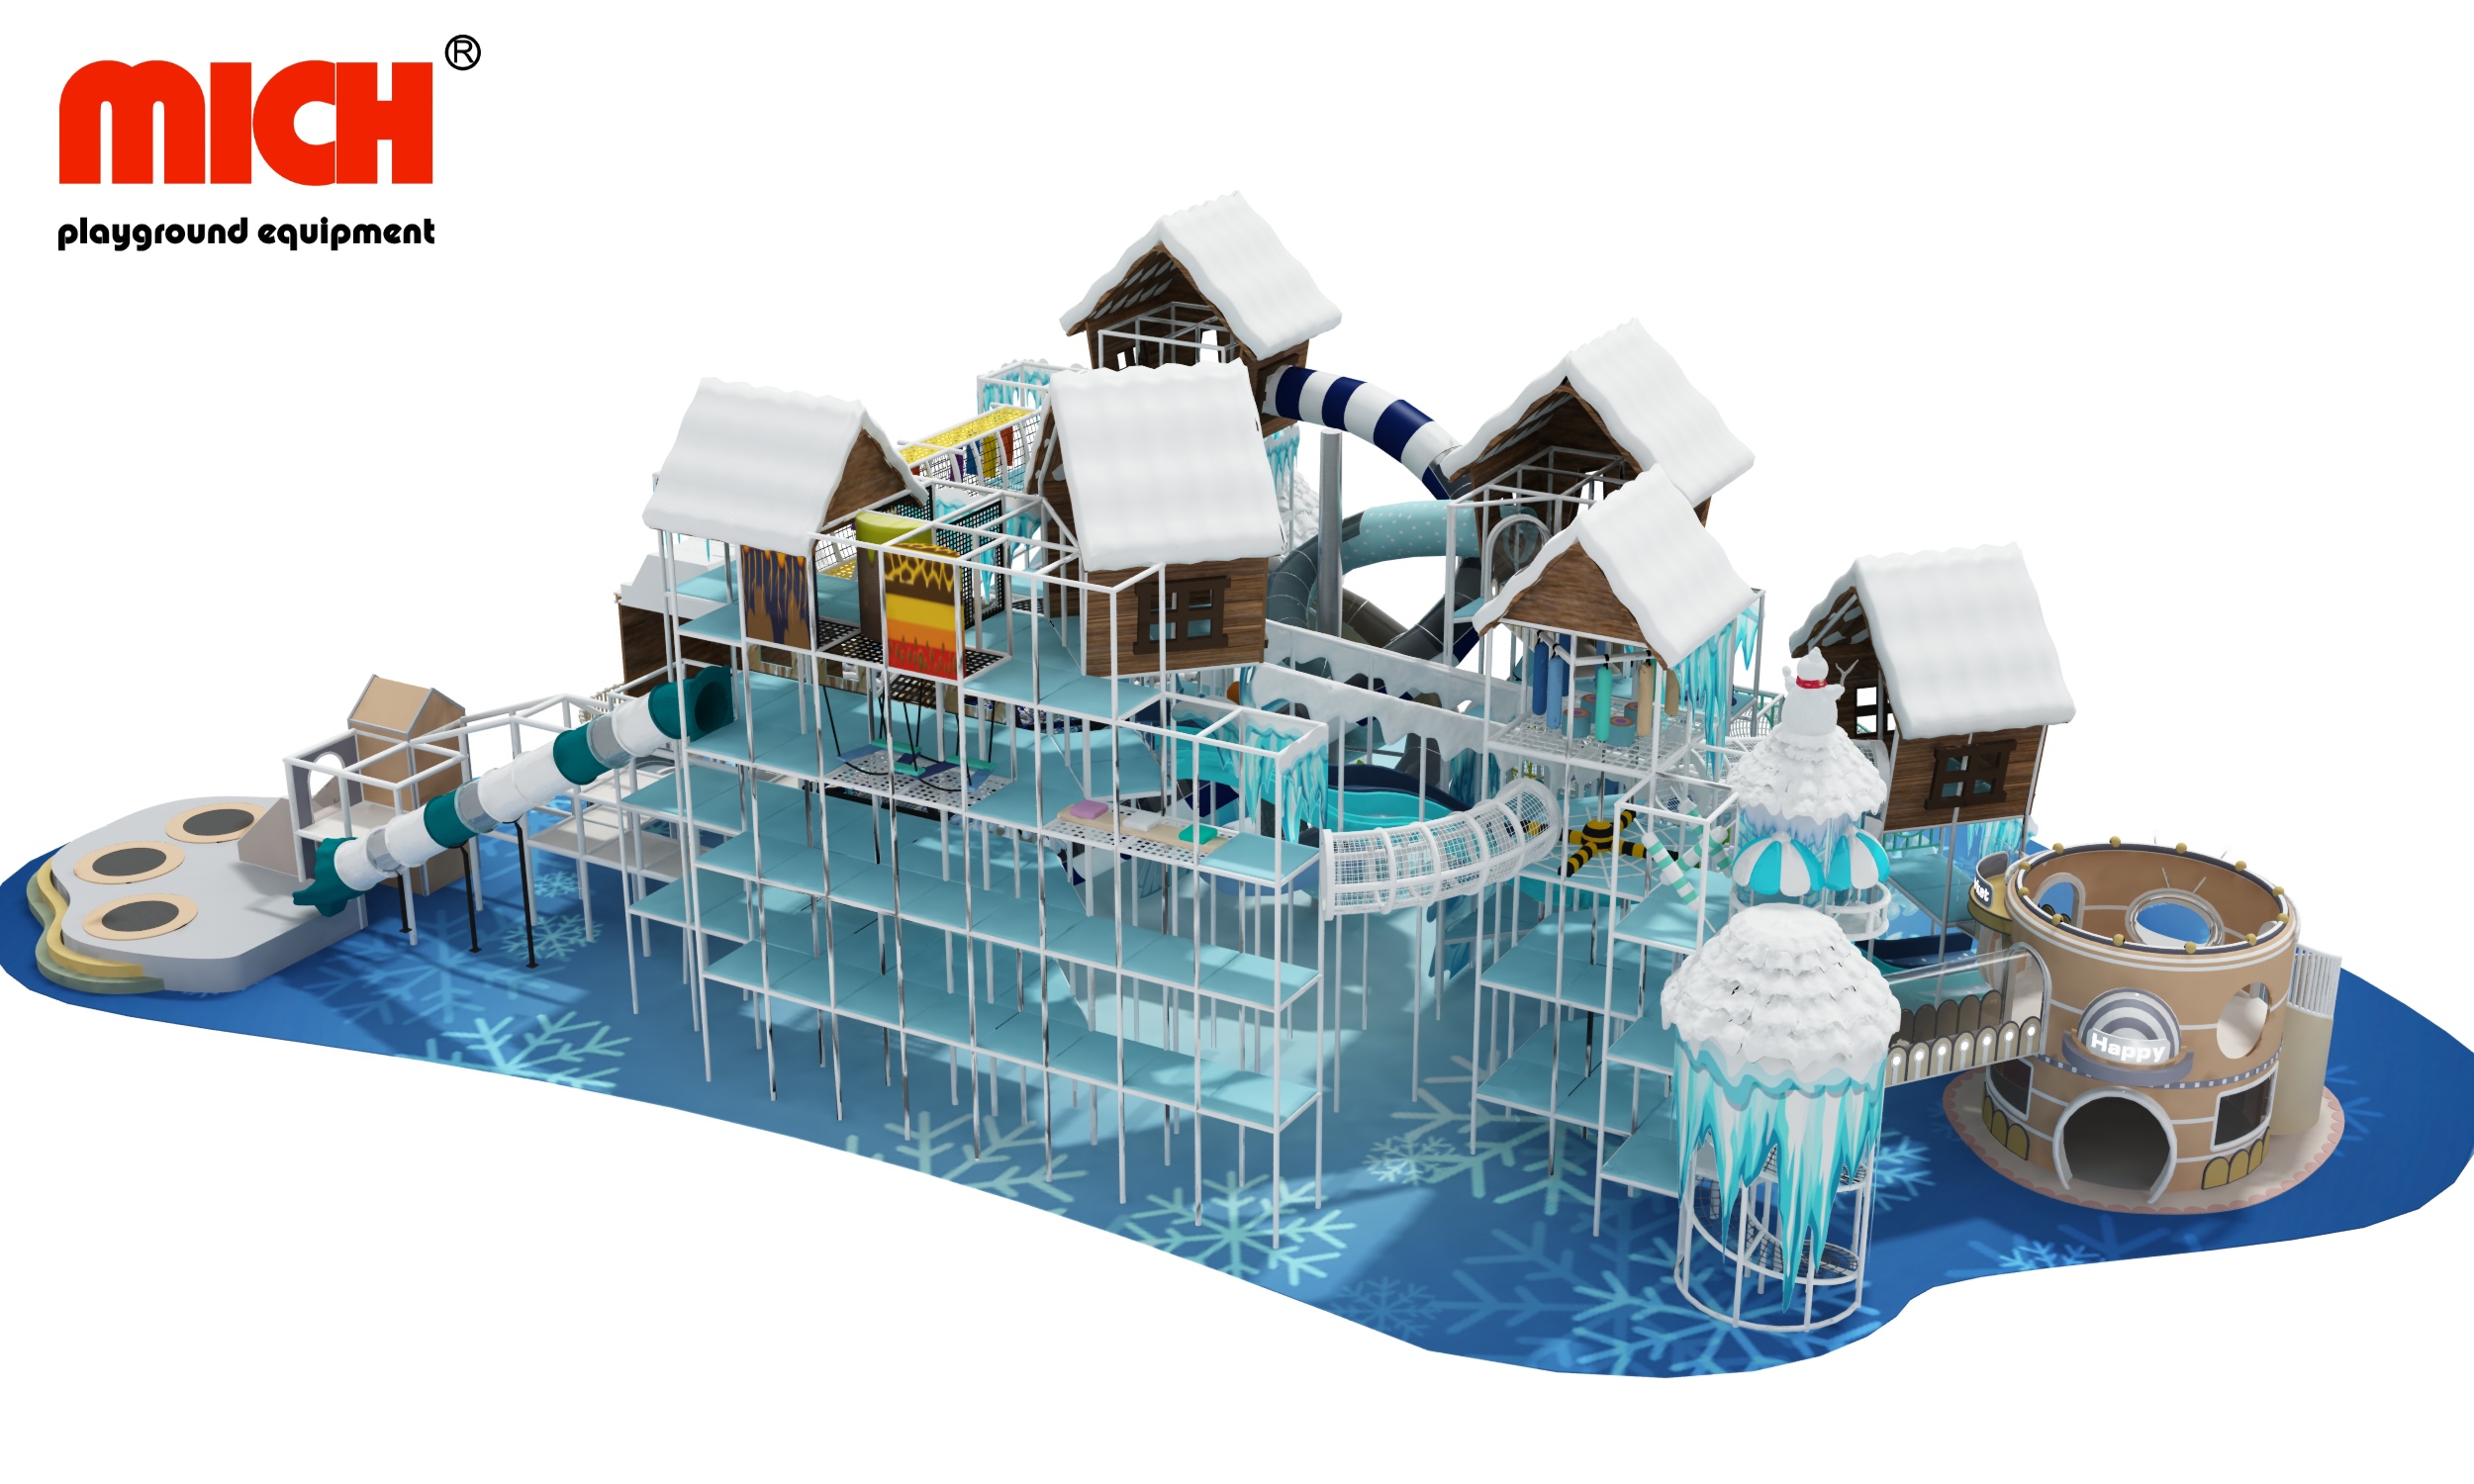 Es dan Snow Castle Tema Desain Baru Bermain Dalam Ruang Dijual